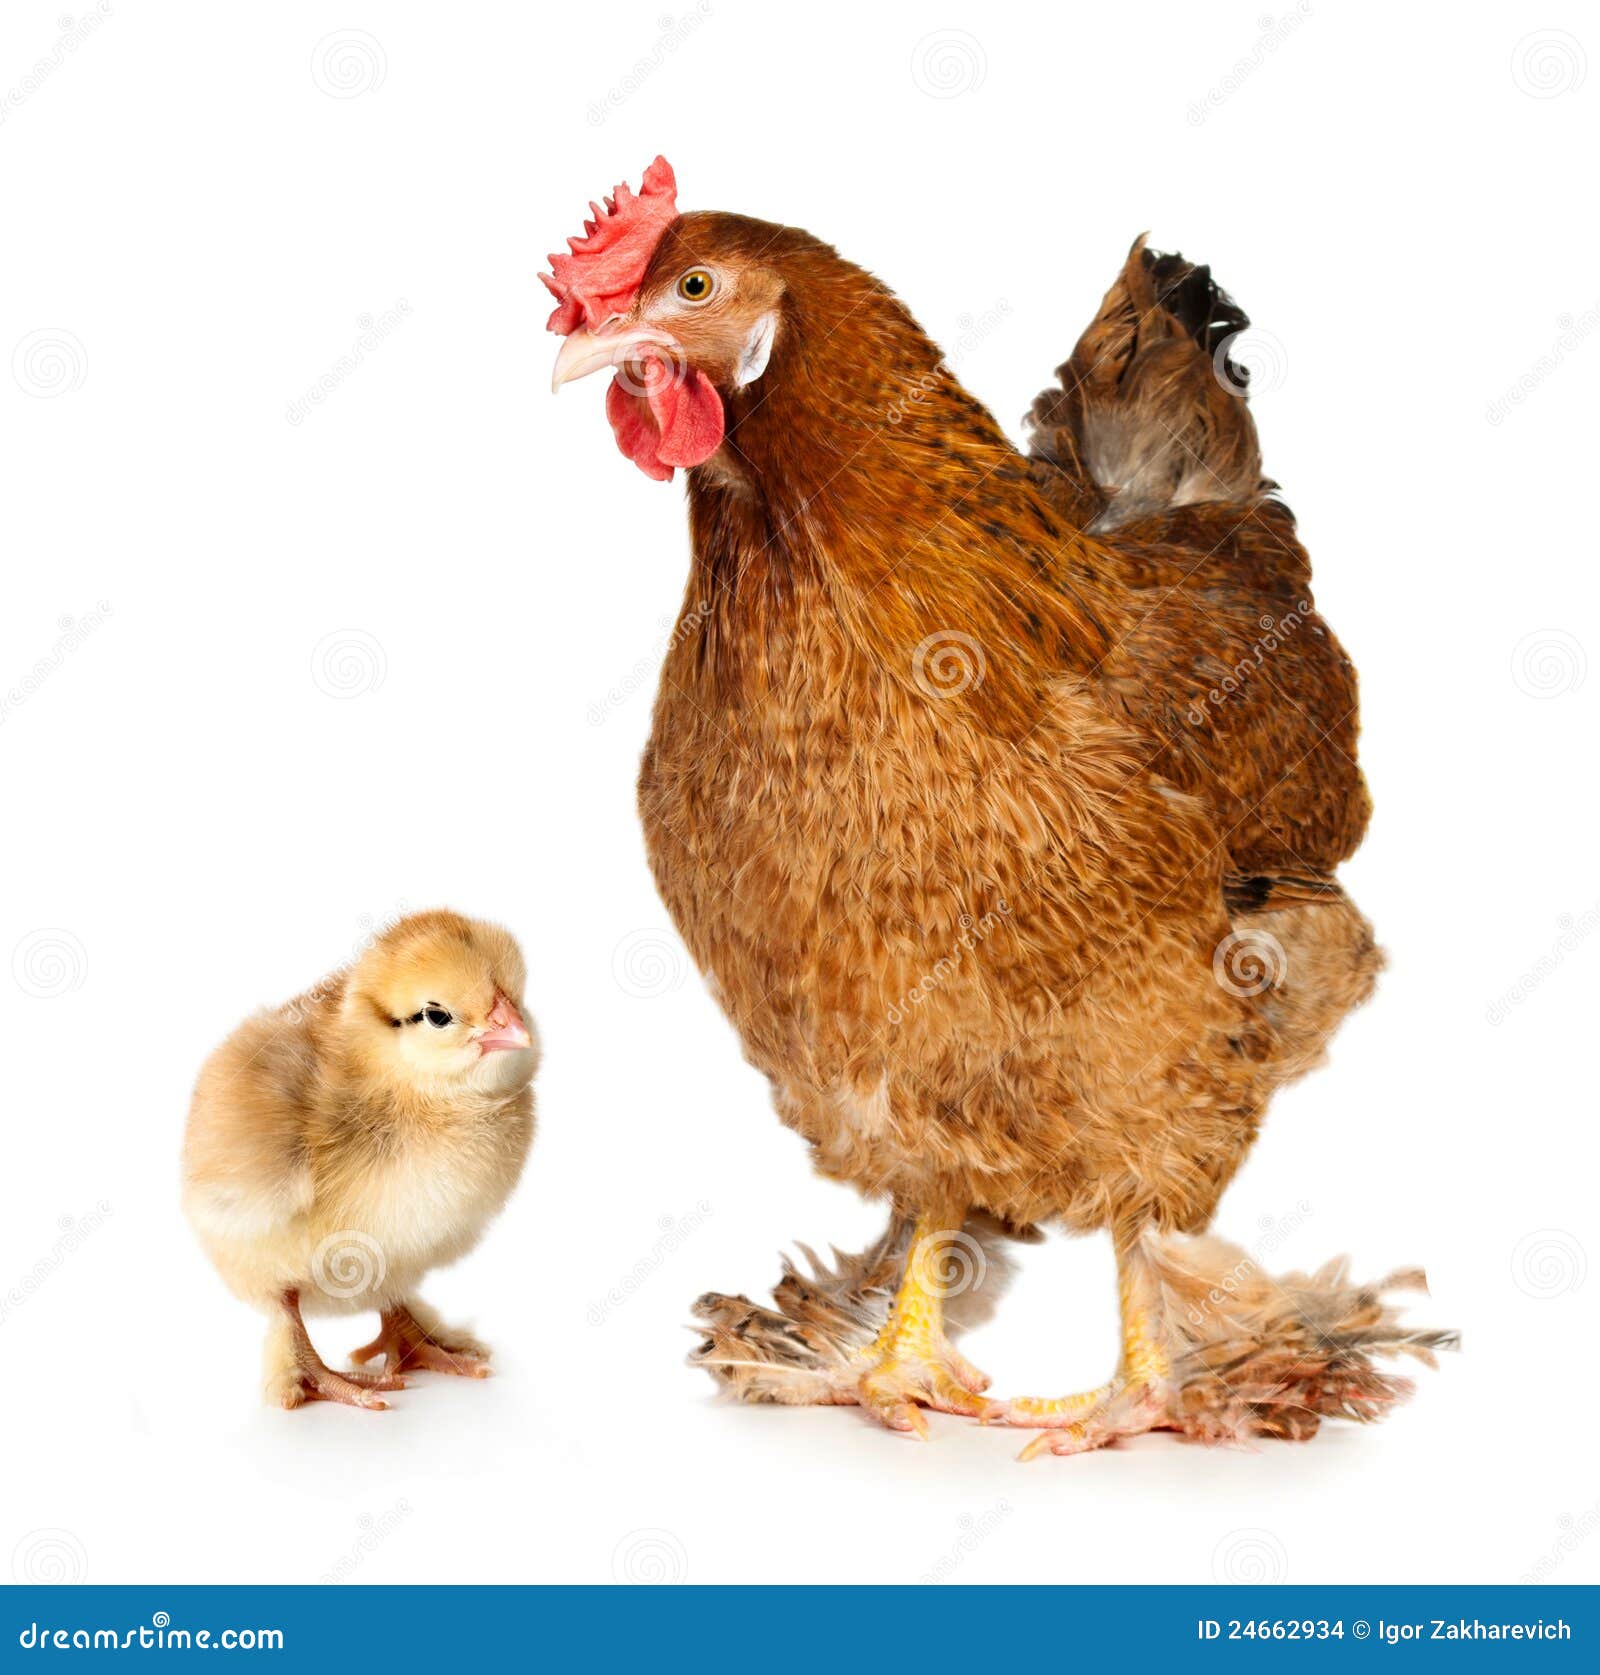 Chick Chick Chicken